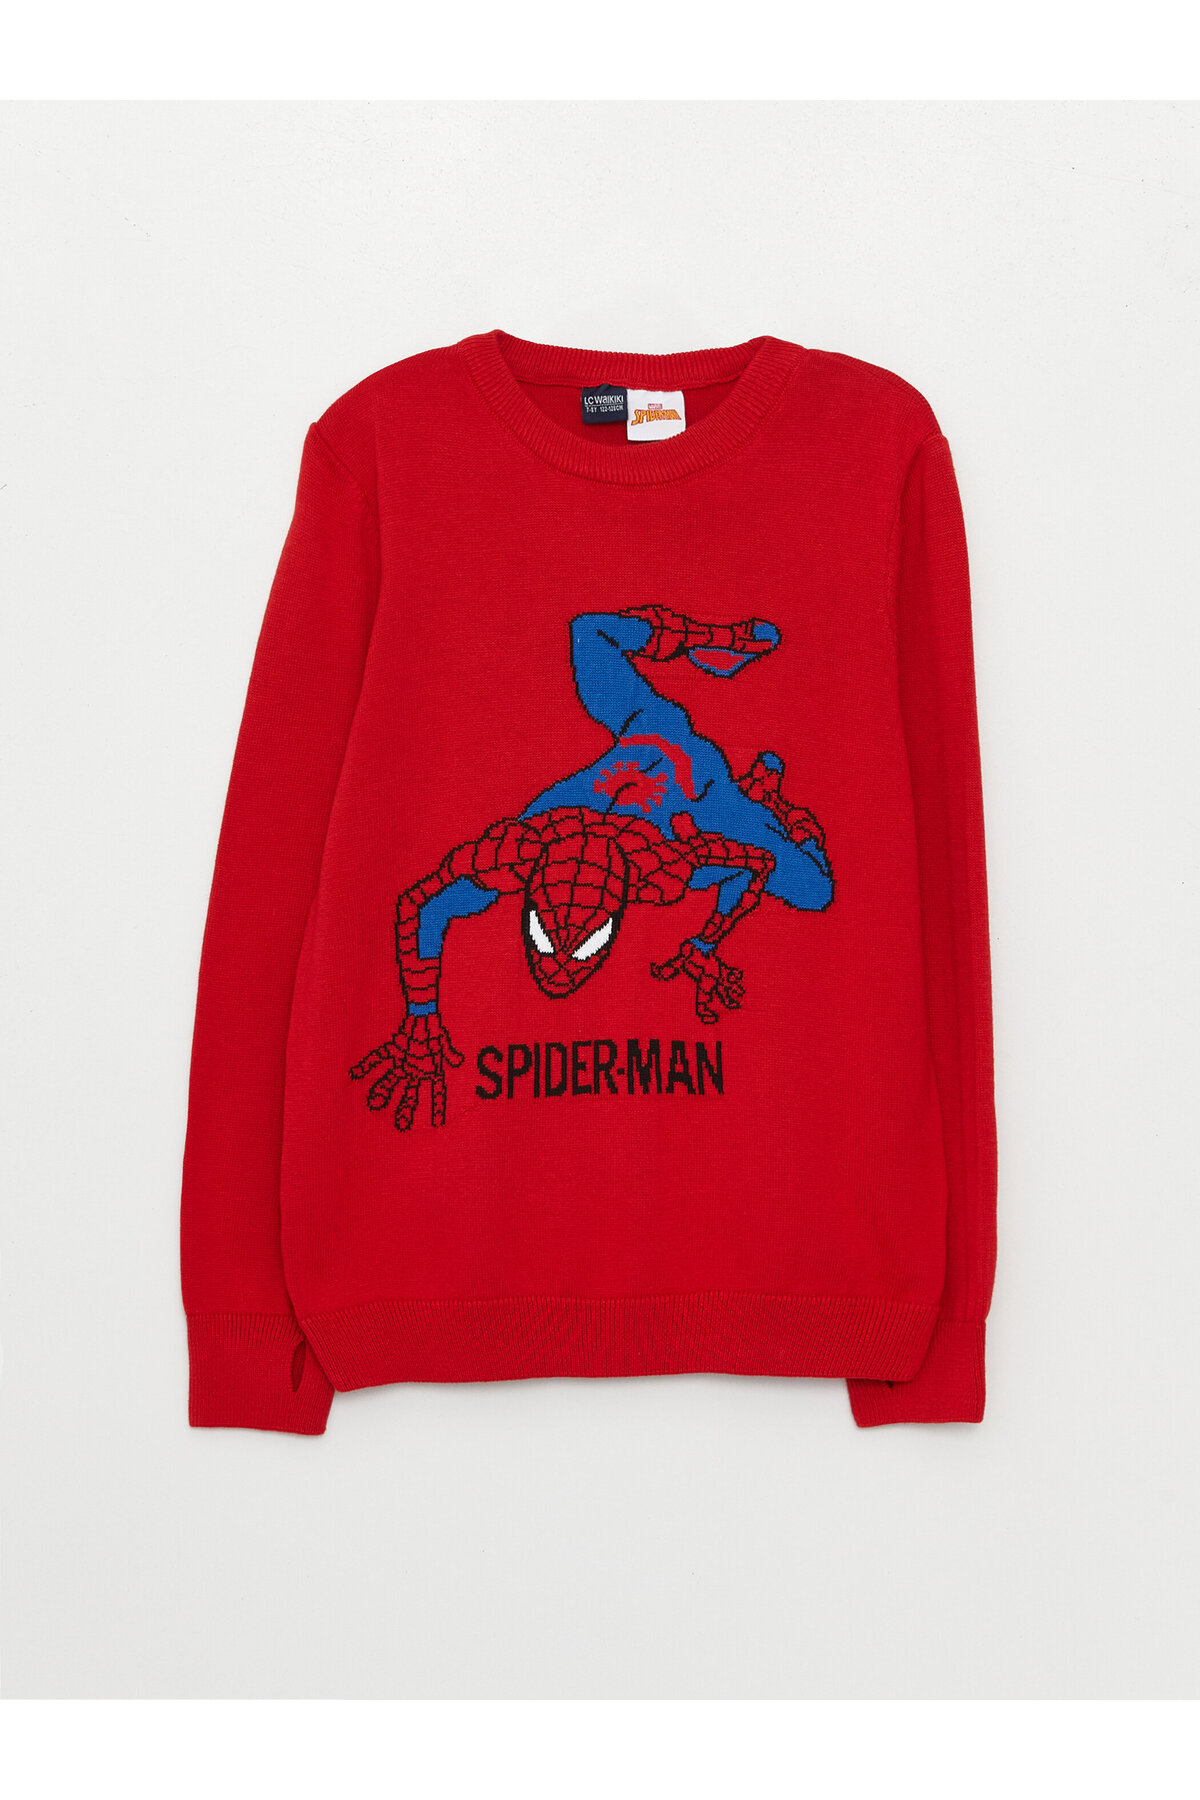 LC Waikiki Crew Neck Spiderman Patterned Long Sleeve Boy's Knitwear Sweater